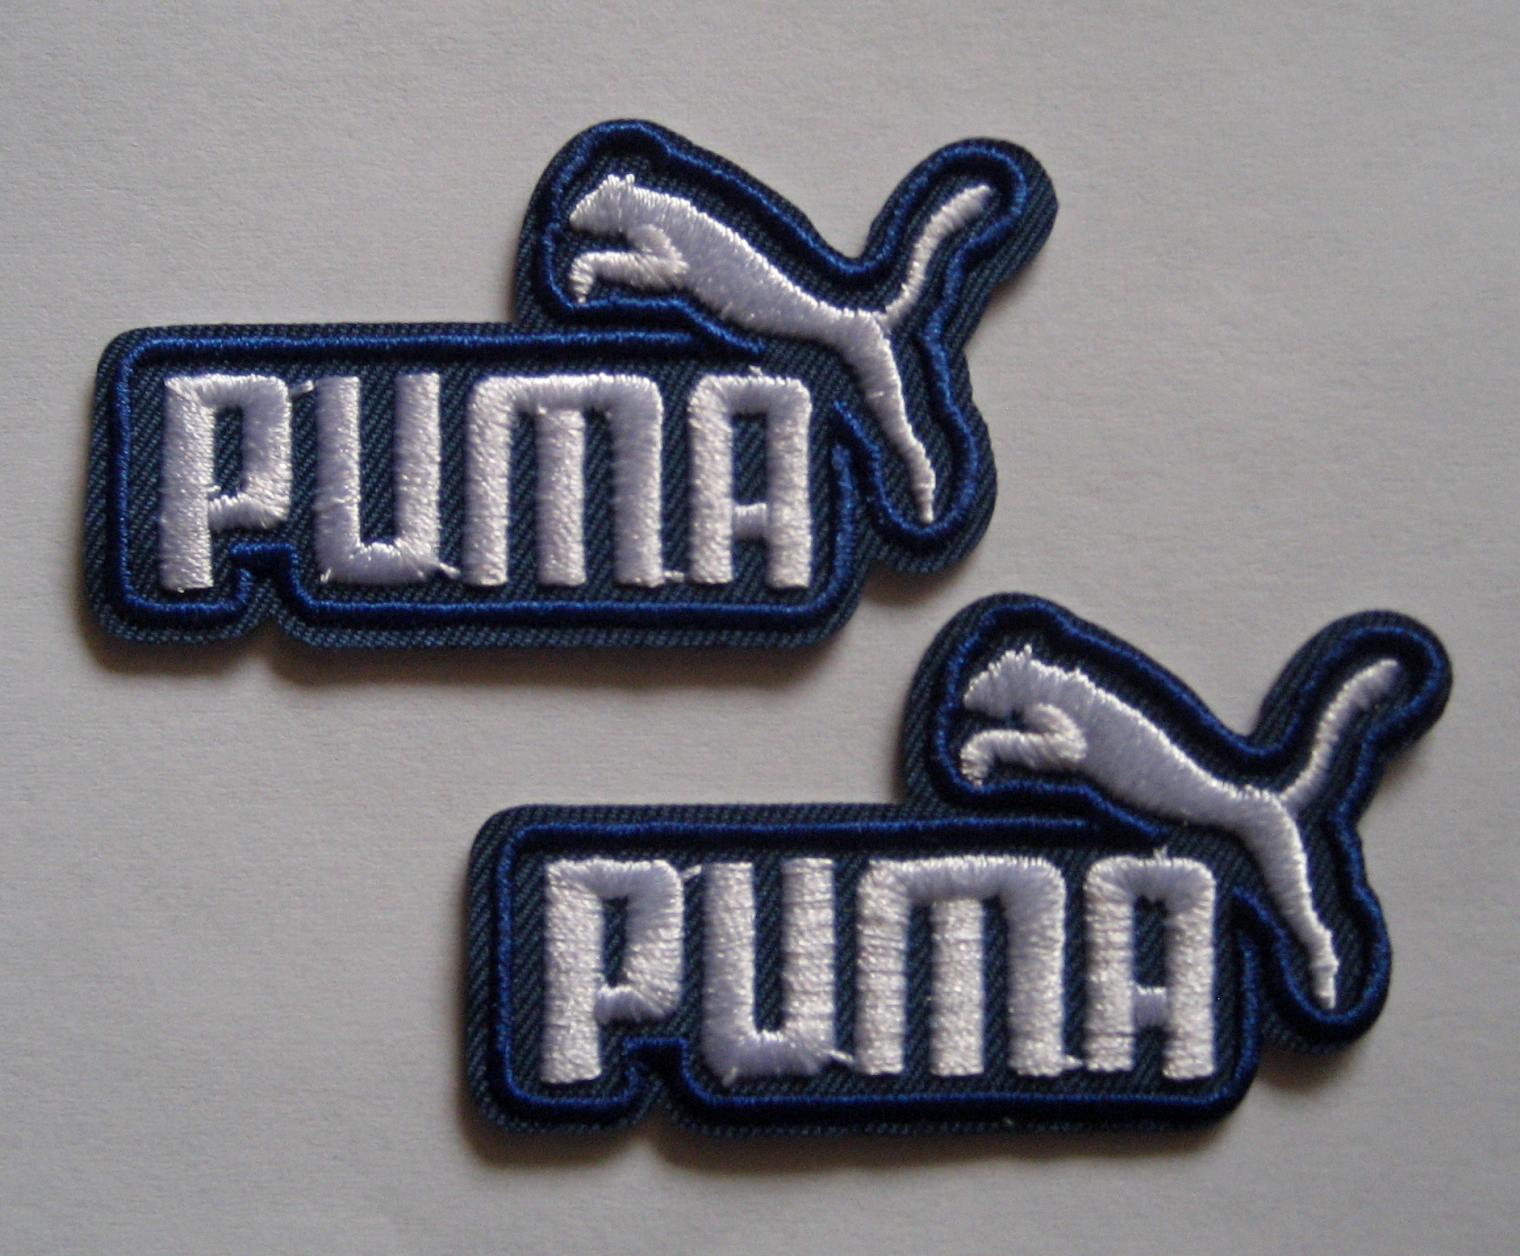 نظارات ريبان patch puma مراجع بحث جاهزة